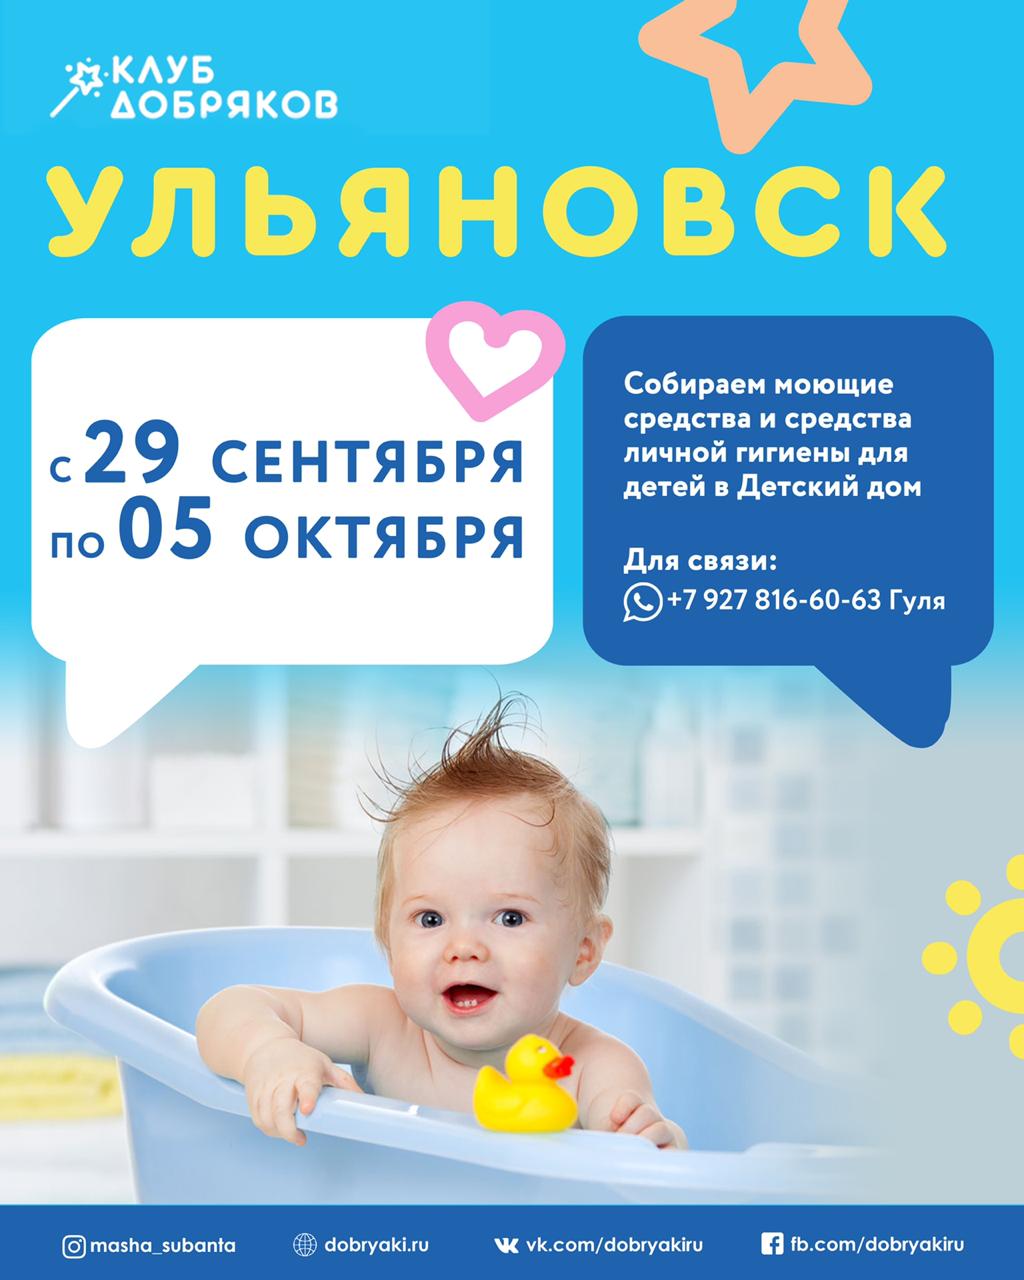 Добряки Ульяновска собирают средства гигиены в детские дома